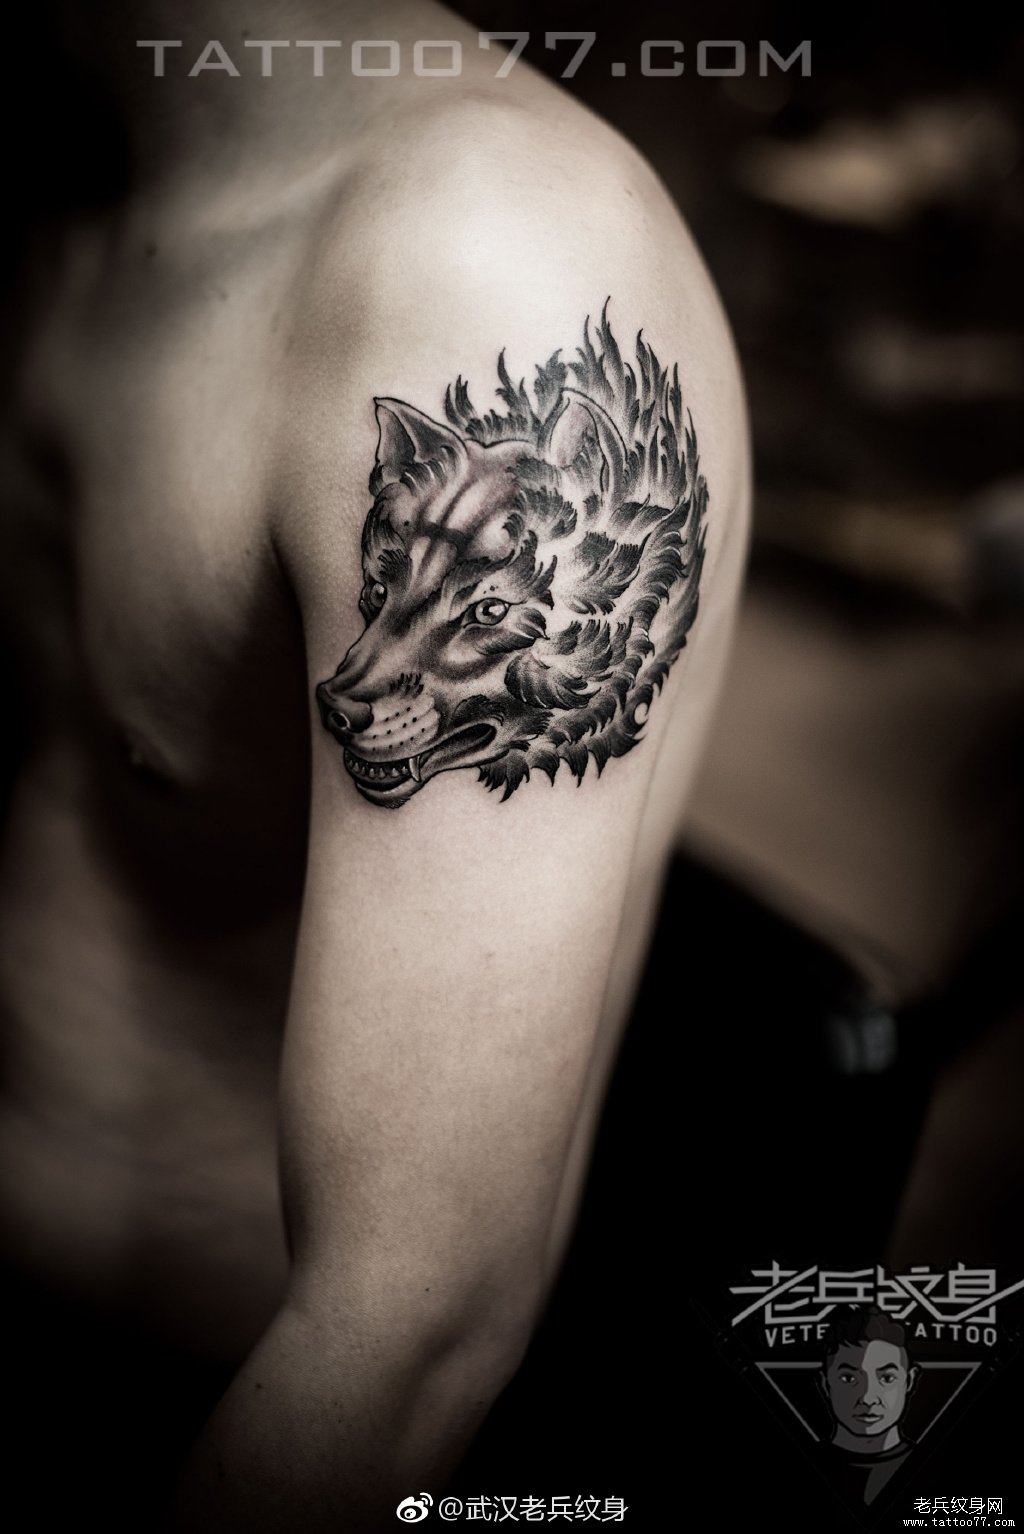 手臂狼头纹身图案作品武汉纹身店打造